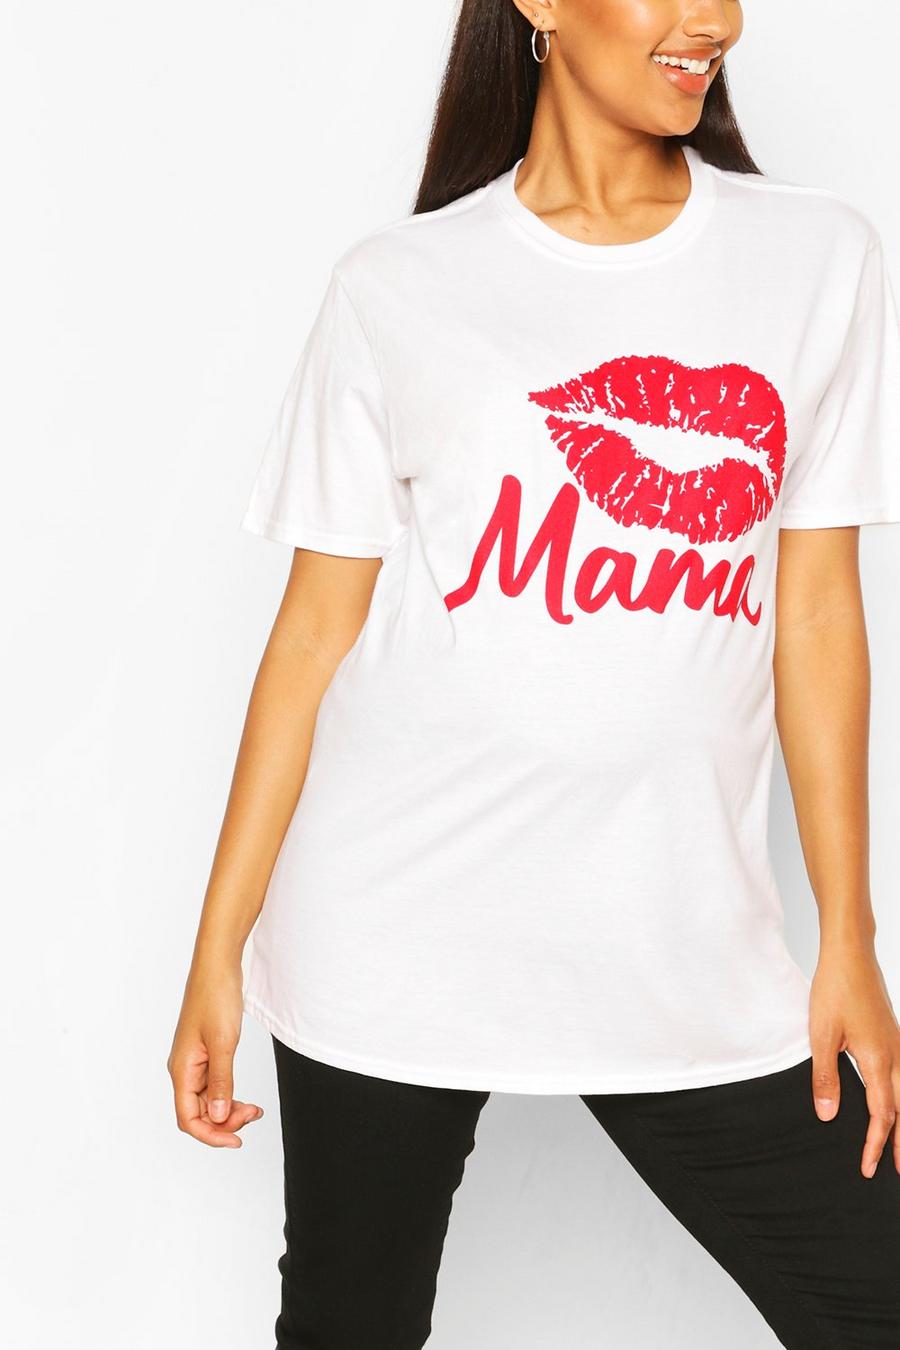 Camiseta con eslogan "Mama" y estampado de labios Ropa premamá, Blanco image number 1